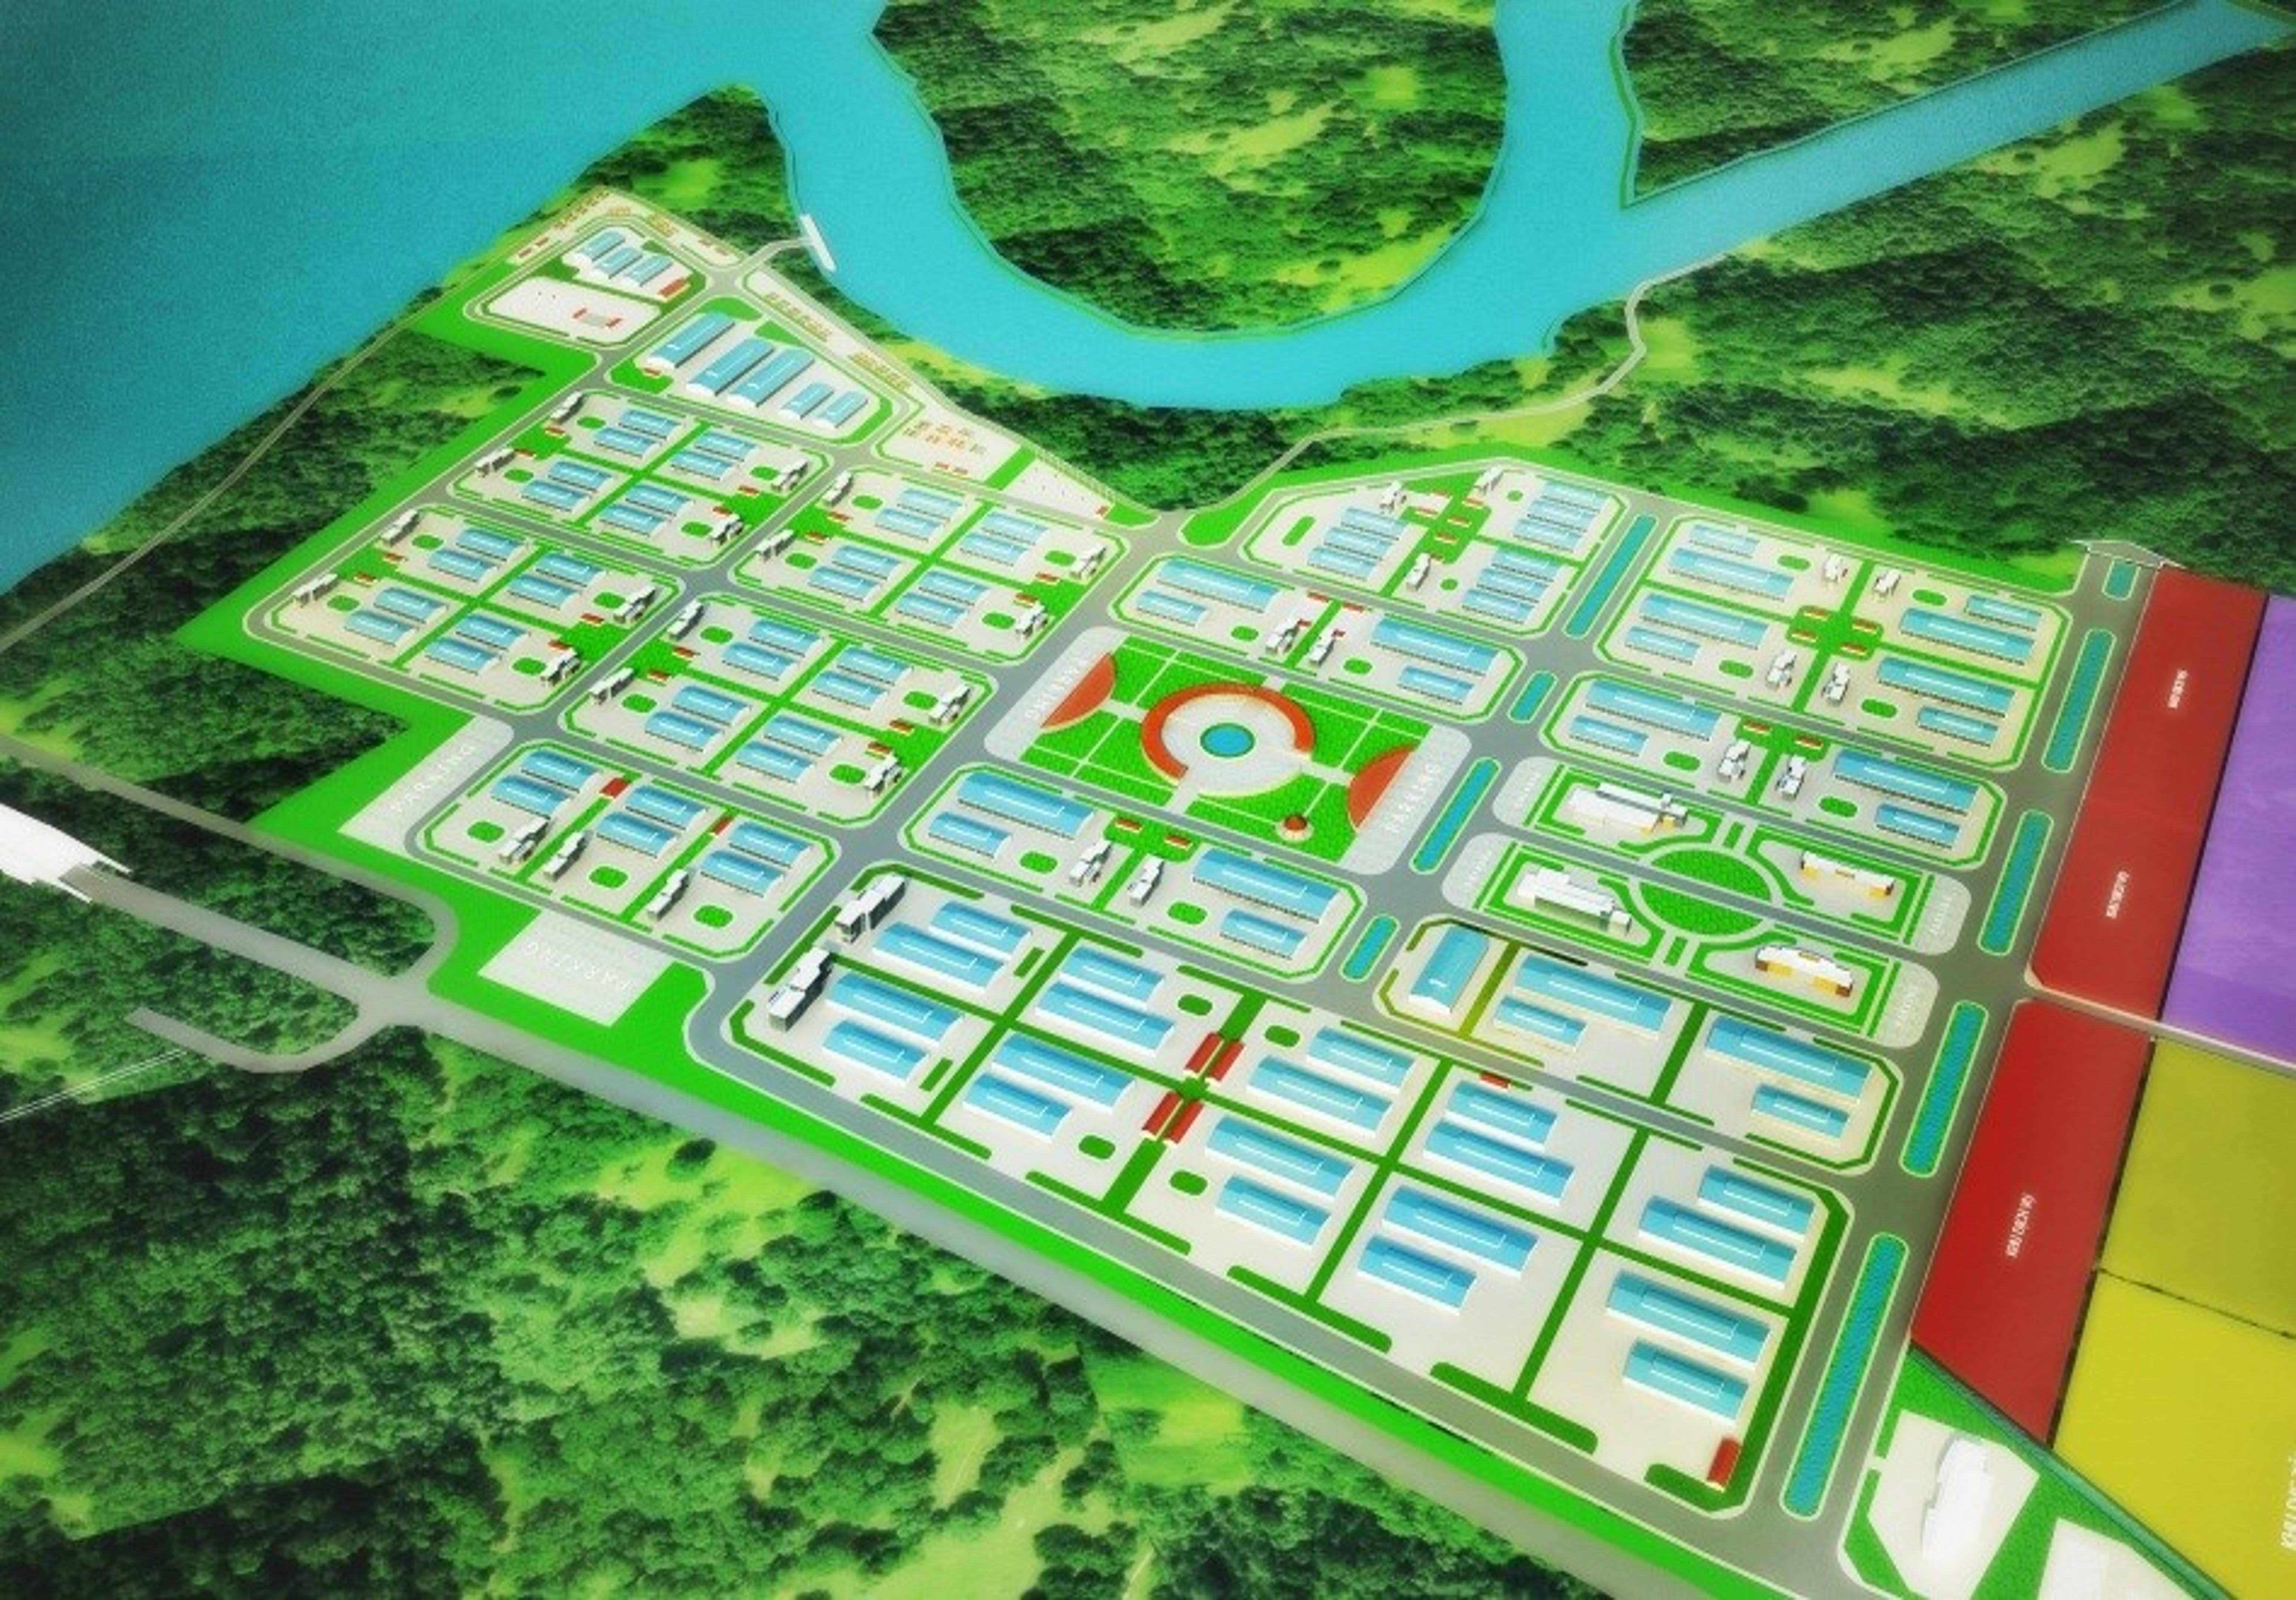 Co Chien Industrial Park